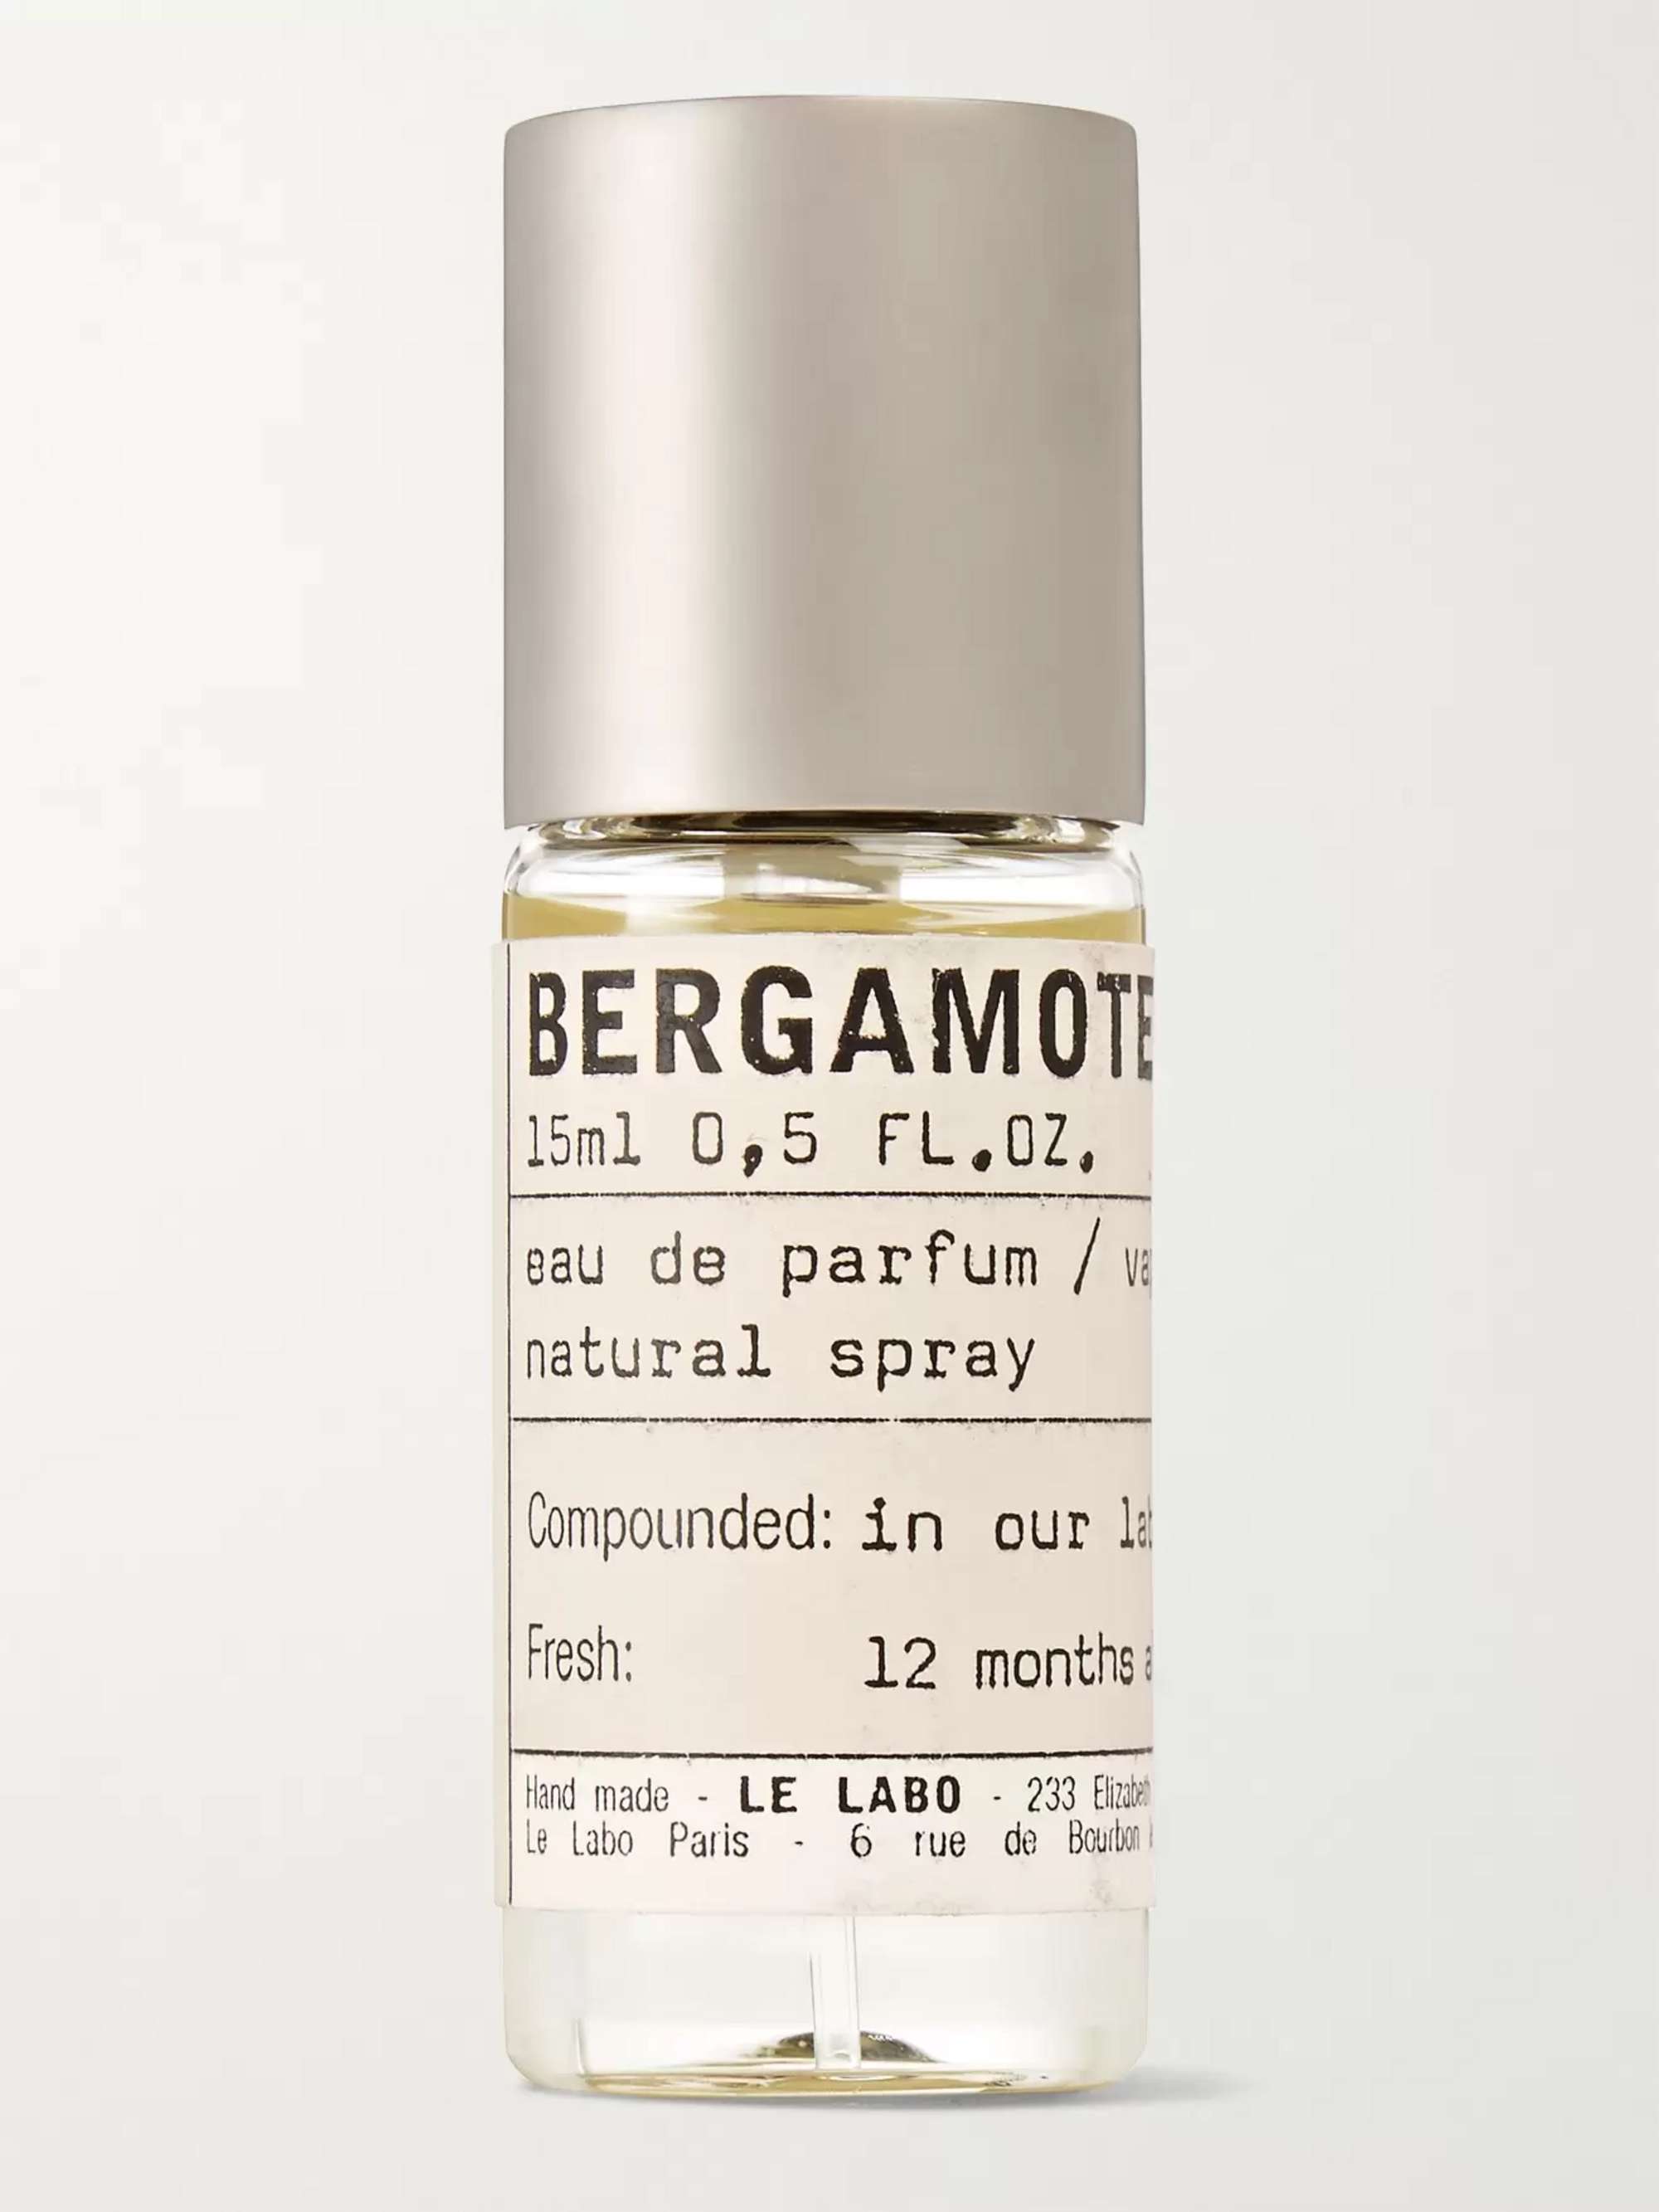 LE LABO Bergamote 22 Eau de Parfum, 15ml